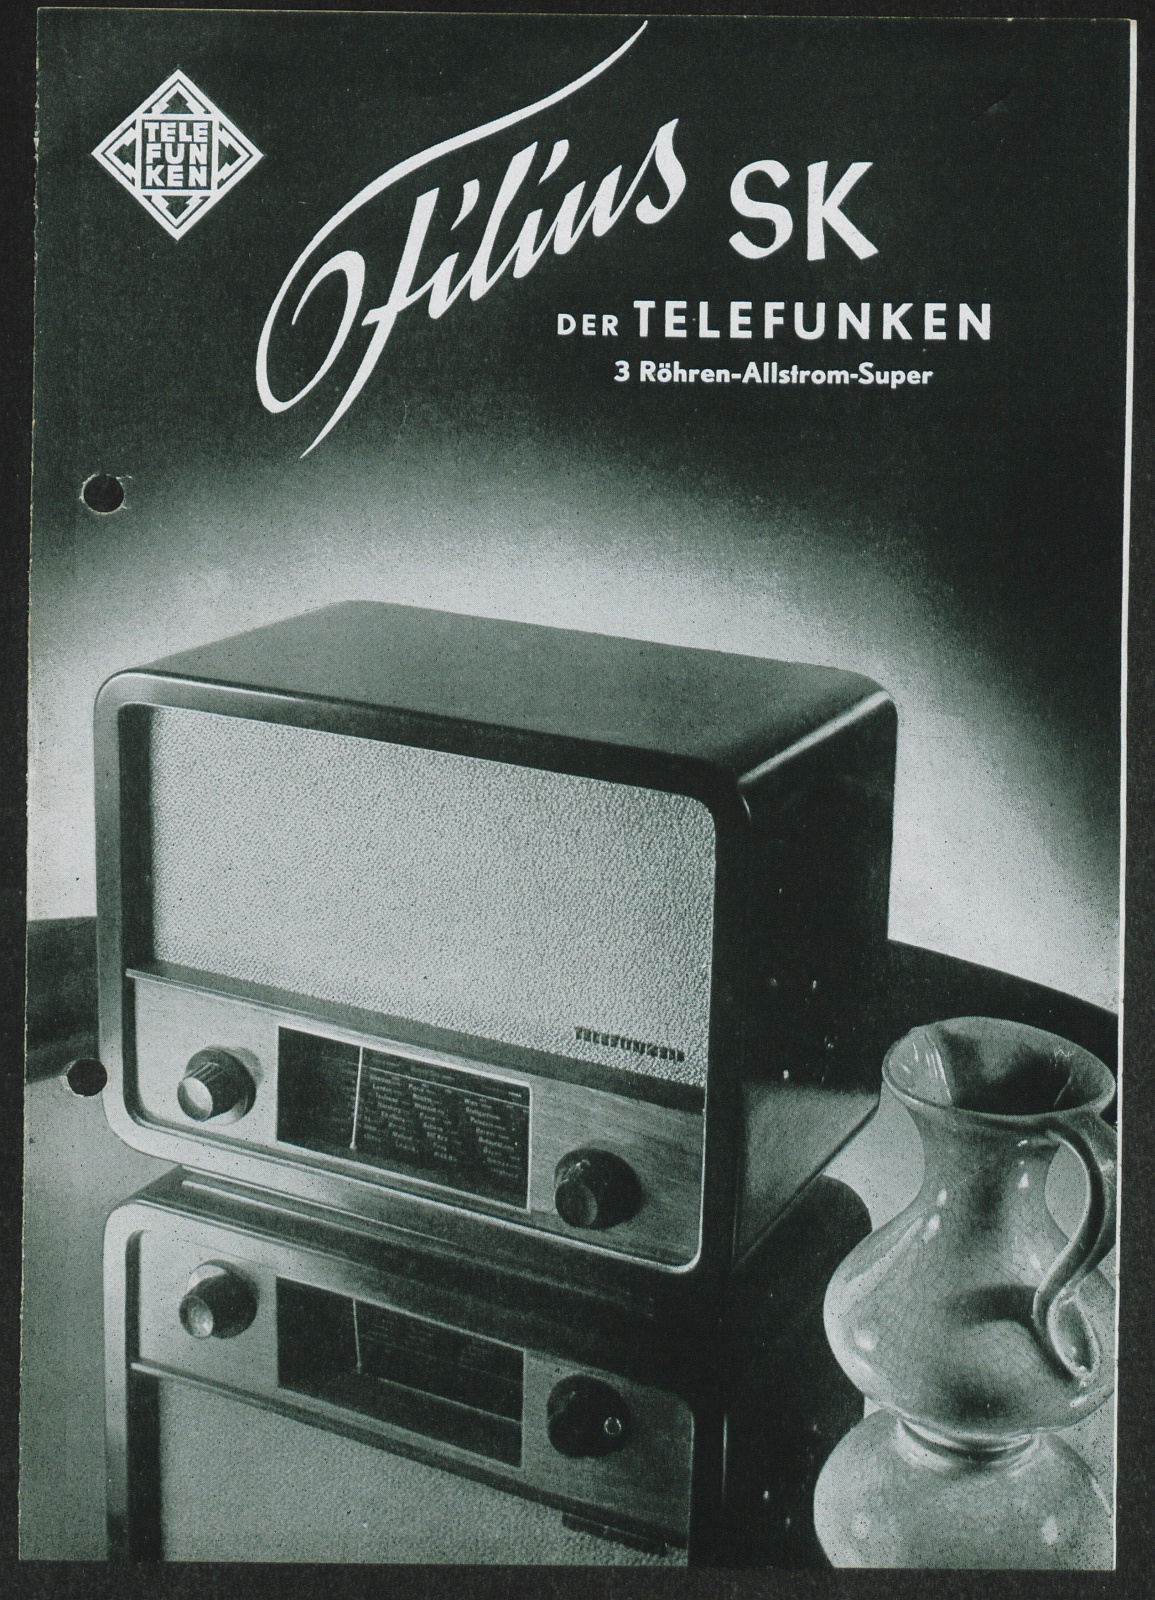 Bedienungsanleitung: Der Telefunken Filius SK 3 Röhren Allstrom Super (Stiftung Deutsches Technikmuseum Berlin CC0)